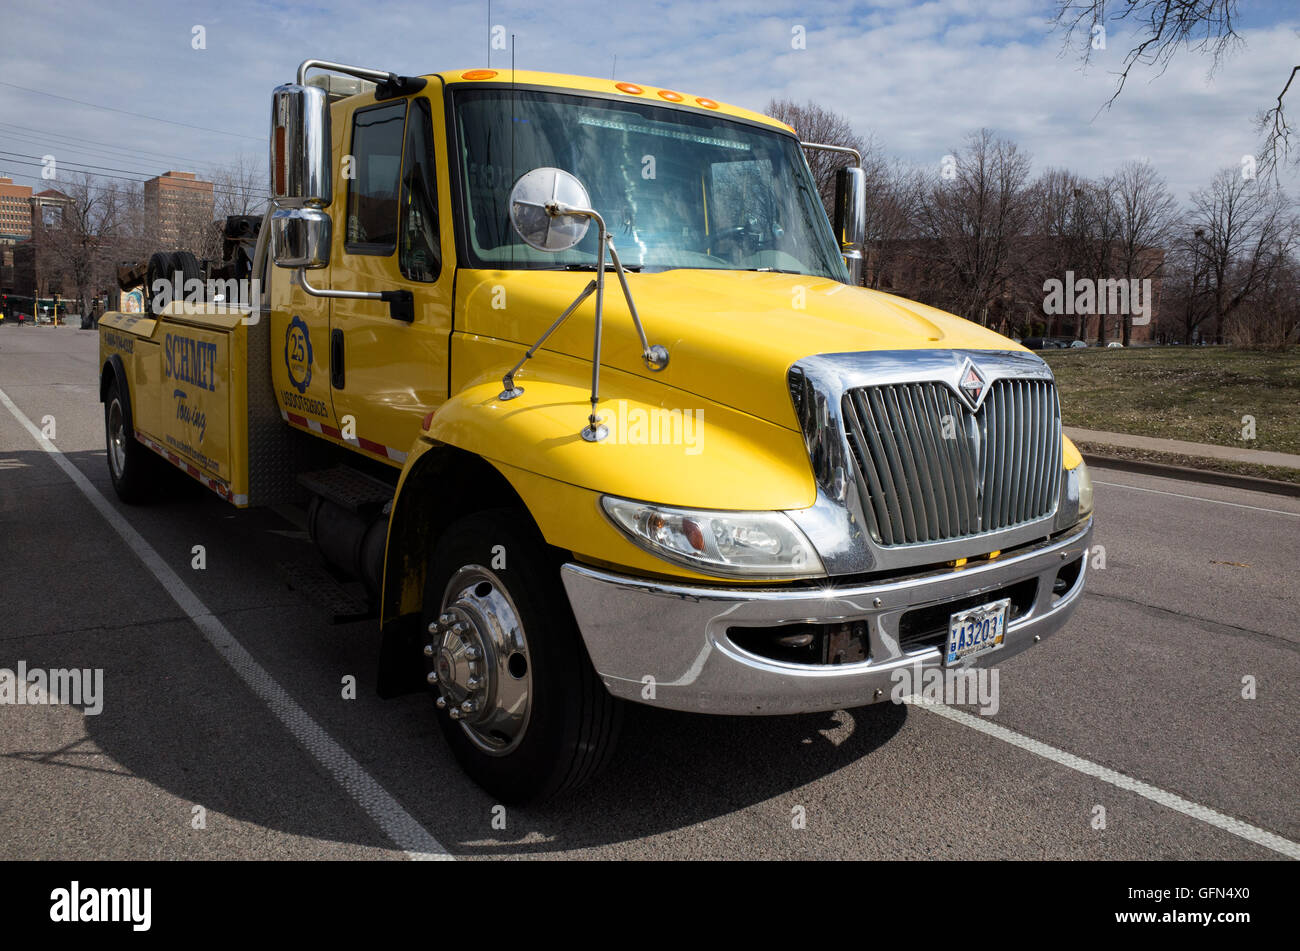 Retrato de un macho amarillo prístino Tow Truck publicidad 25 años de "Remolque hmit'. MN de Minneapolis, Minnesota, EE.UU. Foto de stock